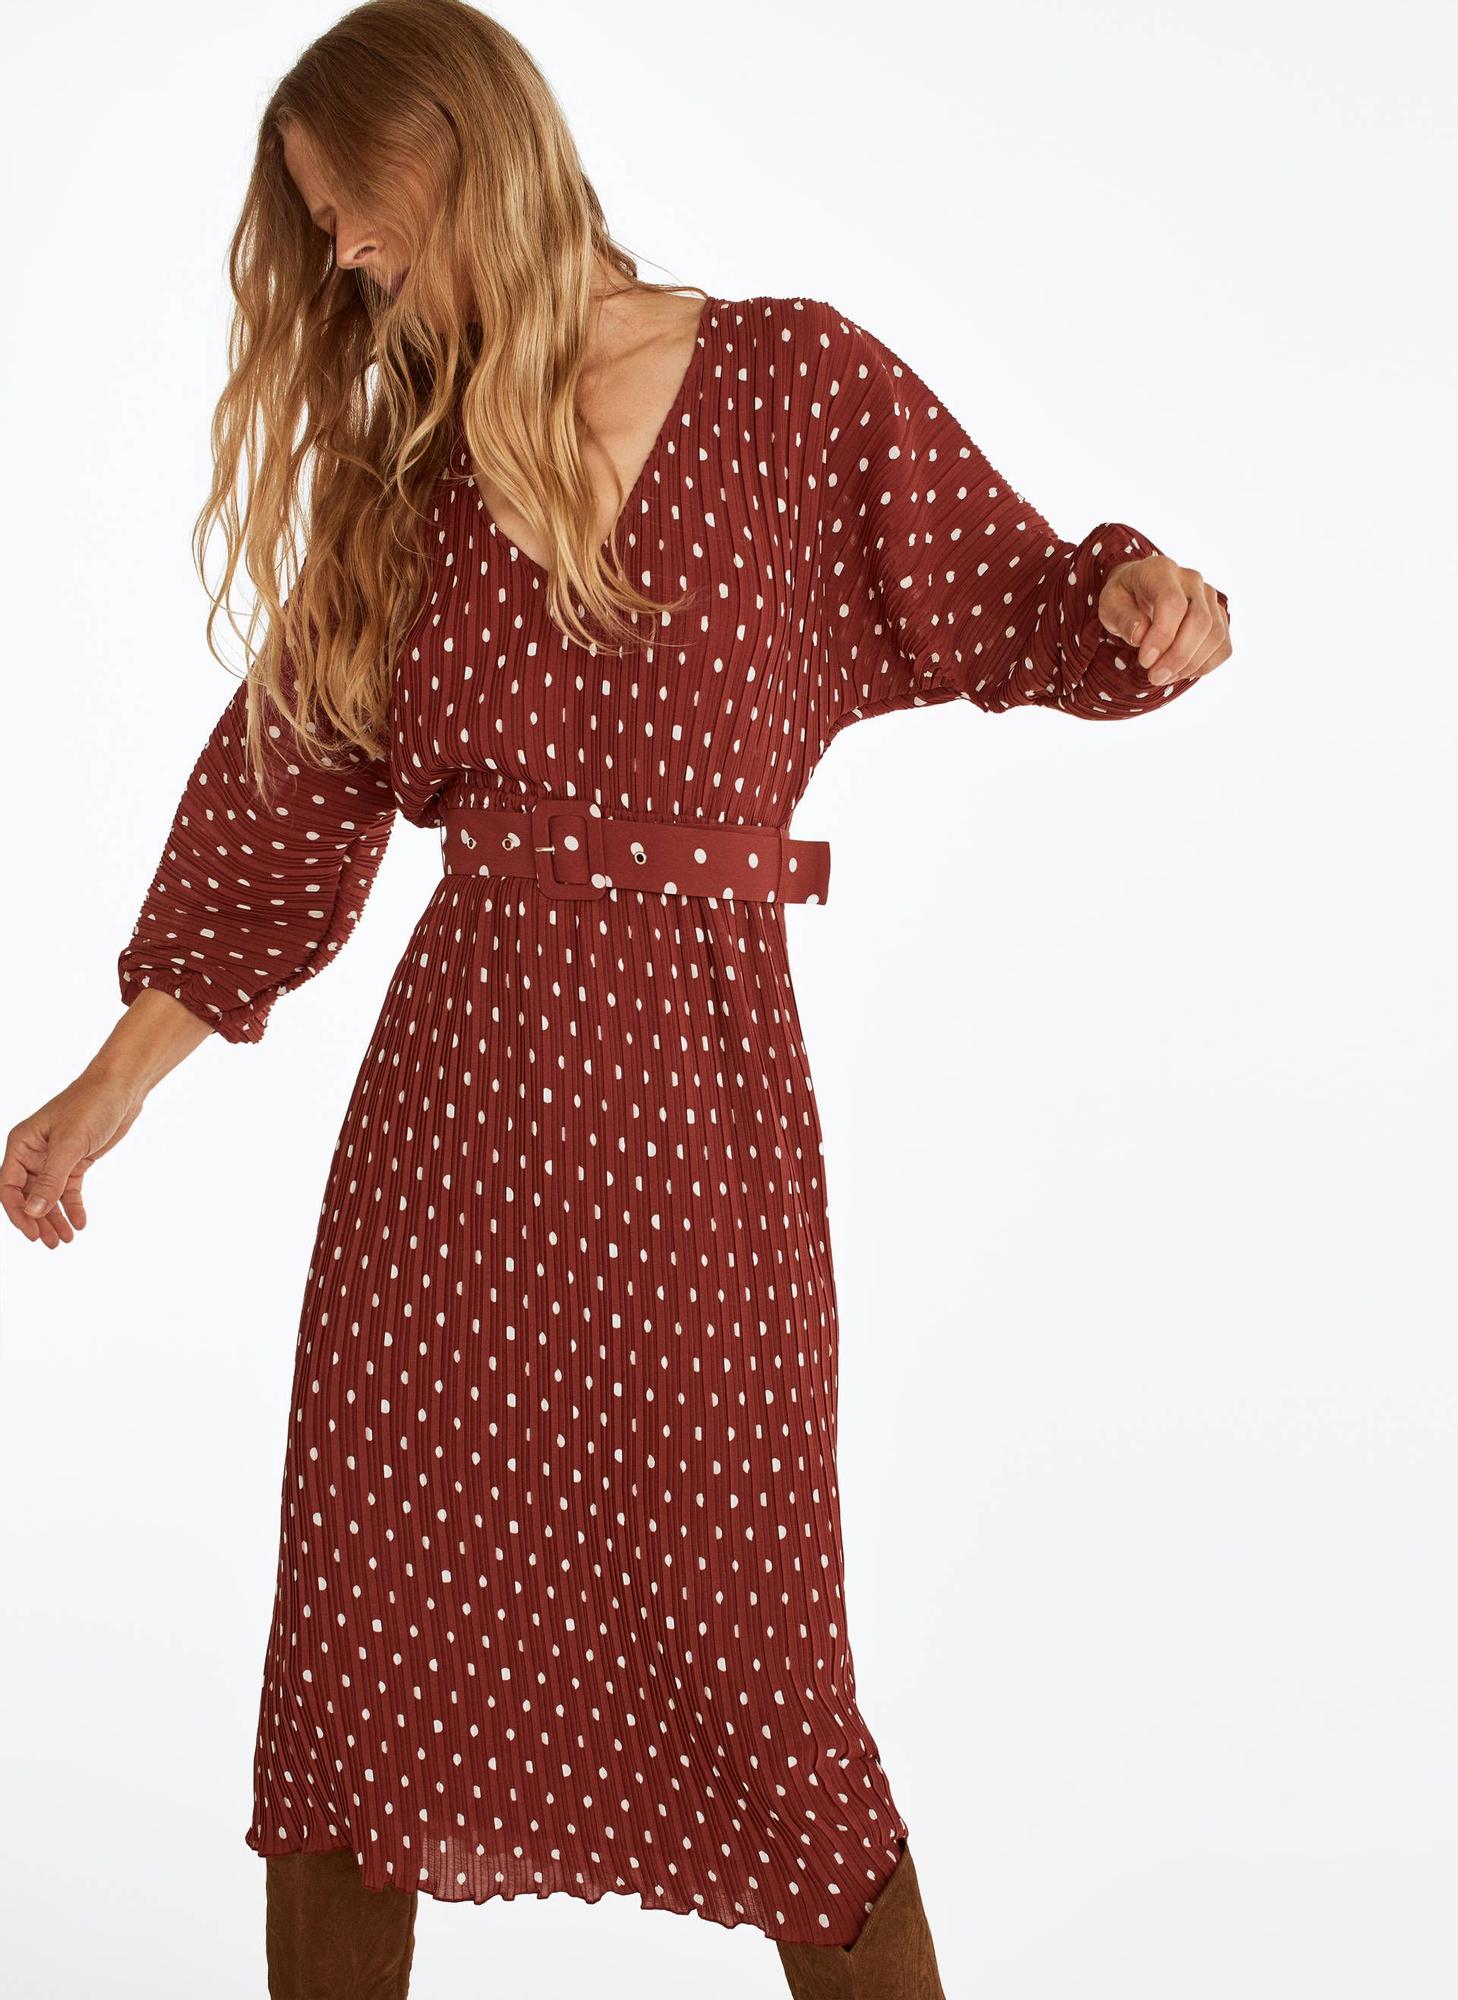 Nos hemos enamorado de estos vestidos de las rebajas de Uterqüe - Woman